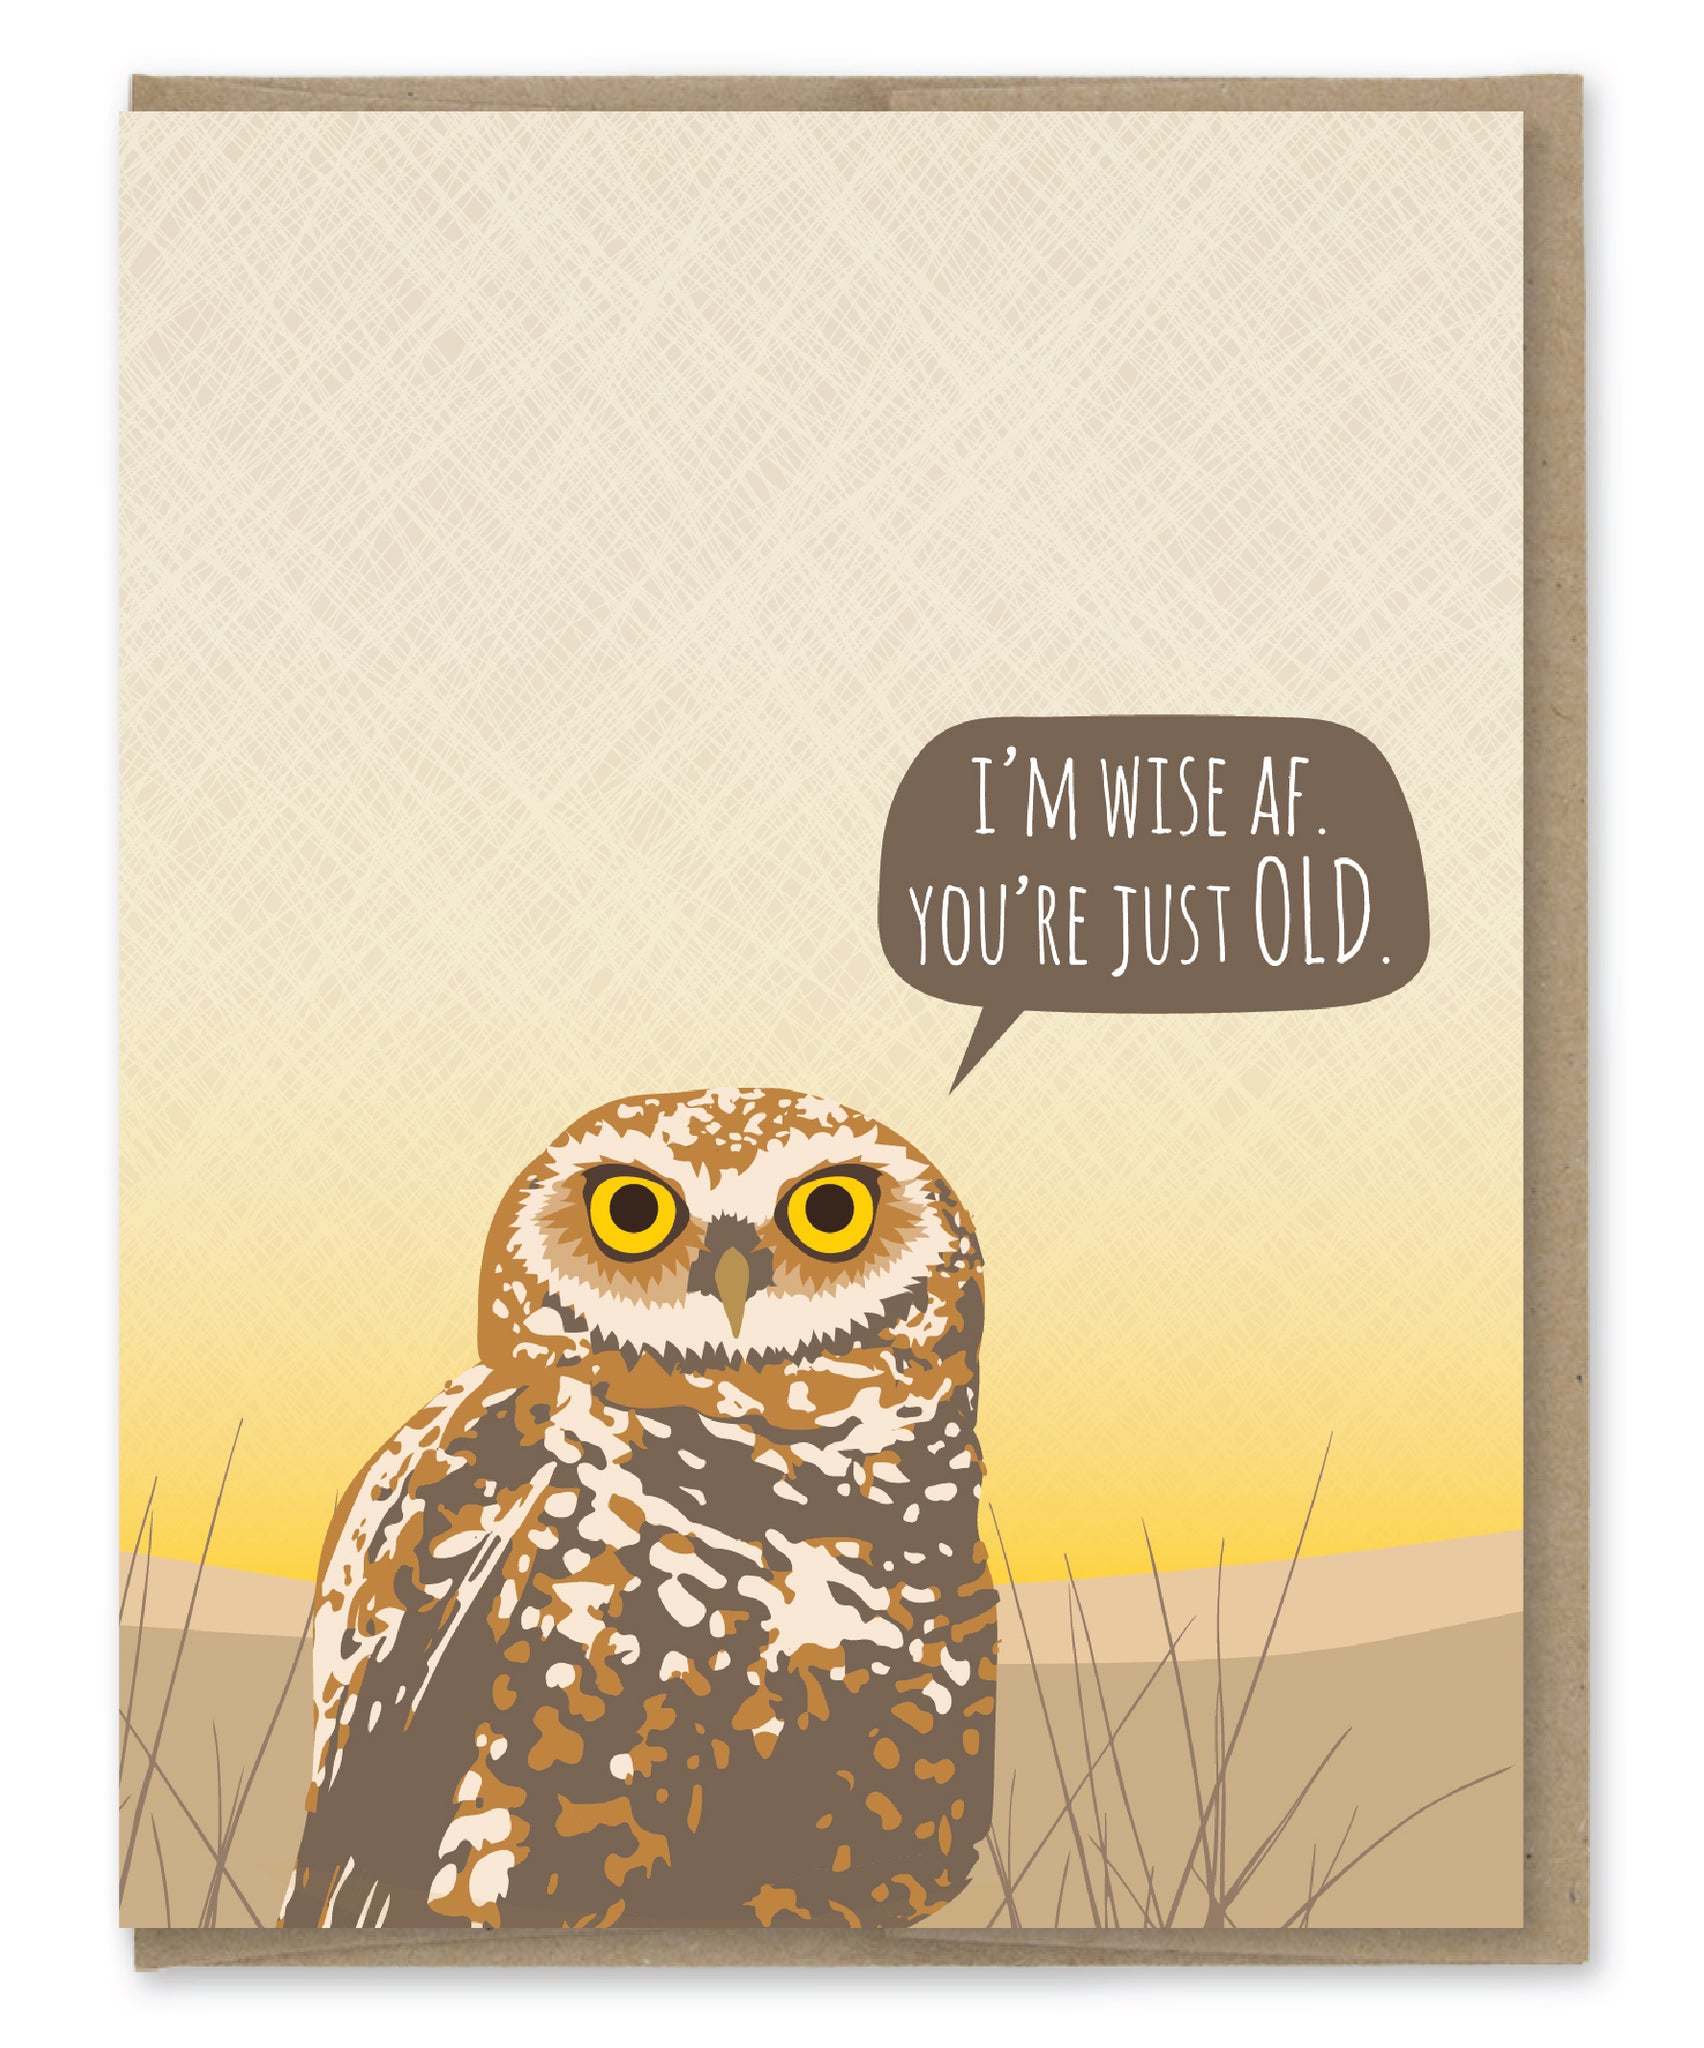 OWL WISE AF BIRTHDAY CARD